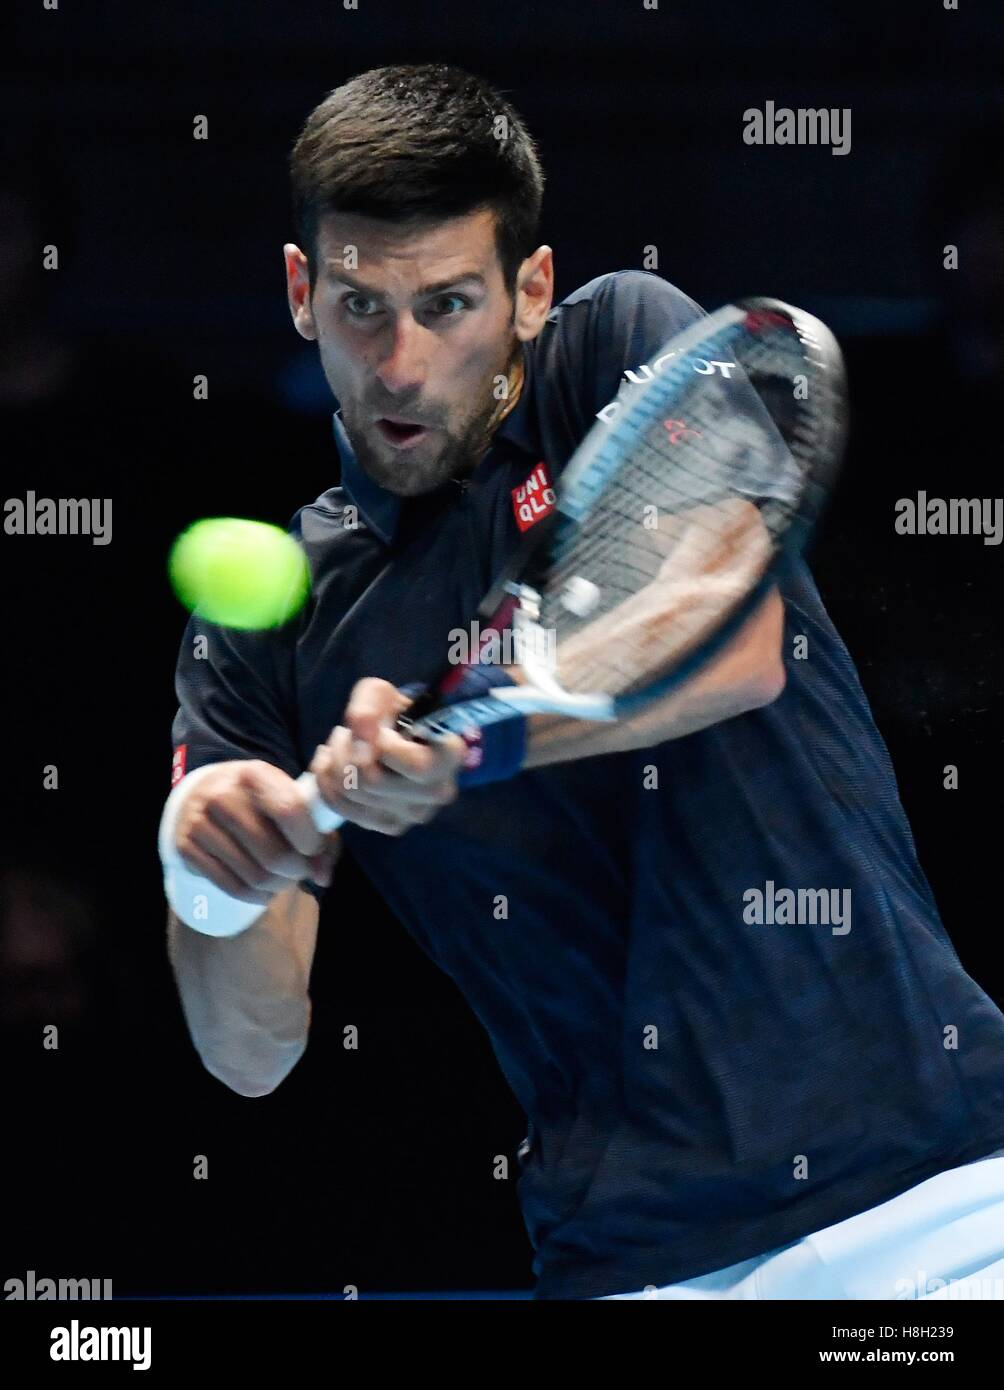 Londres, Royaume-Uni. 13 novembre, 2016. Barclays ATP World Tour Finals 02 Arena London UK Novak Djokovic SRB v Dominic Thiem AUT Djokovic en action pendant le match qu'il a gagné 2-1 Crédit : Leo Mason/Alamy Live News Banque D'Images